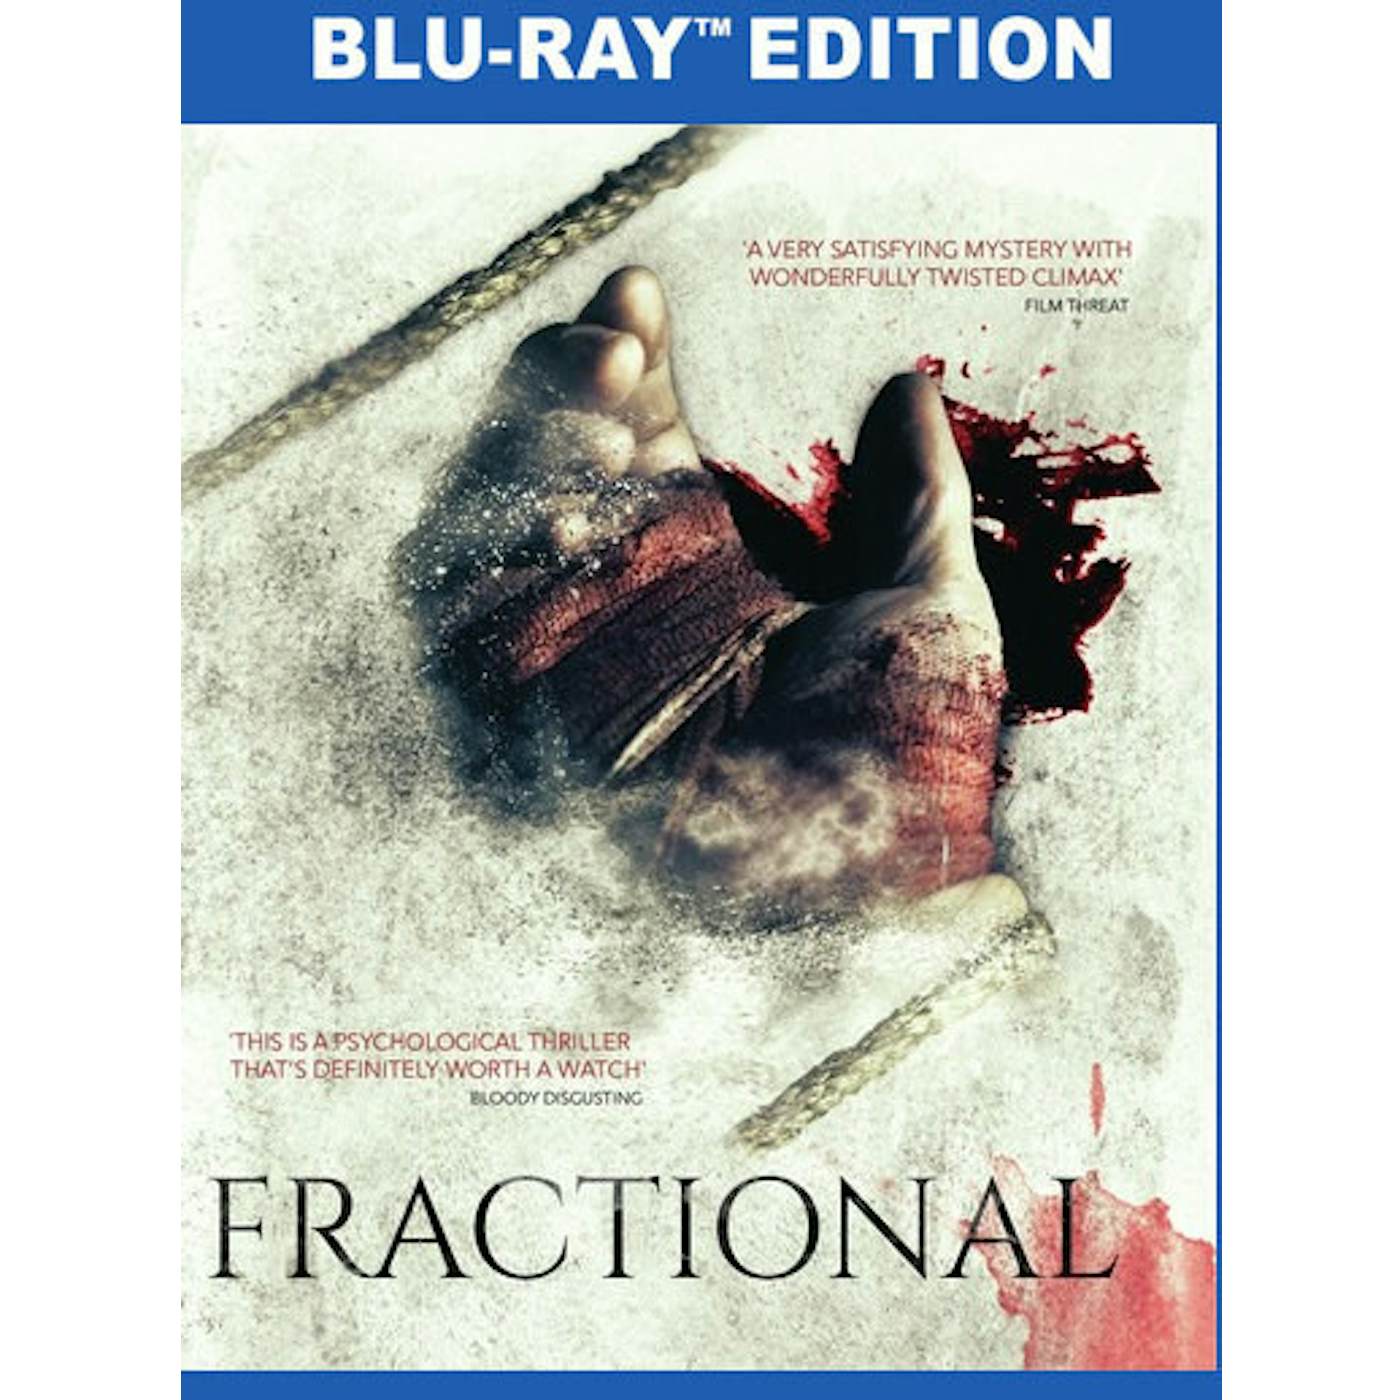 FRACTIONAL Blu-ray